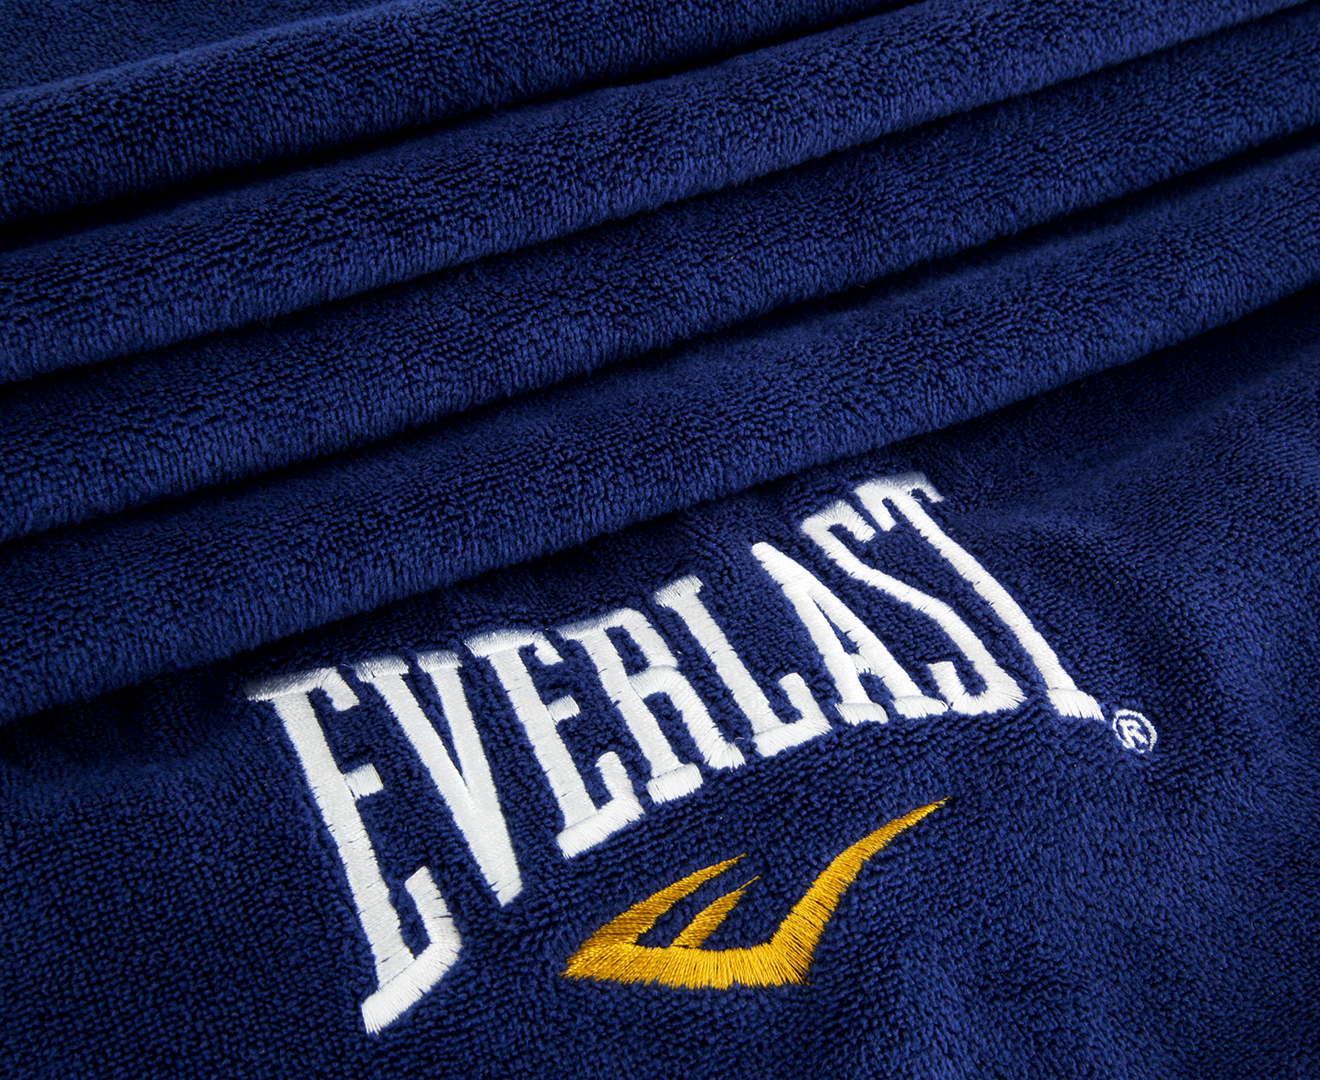 Everlast Microfibre Gym Towel - Navy | Www.catch.com.au